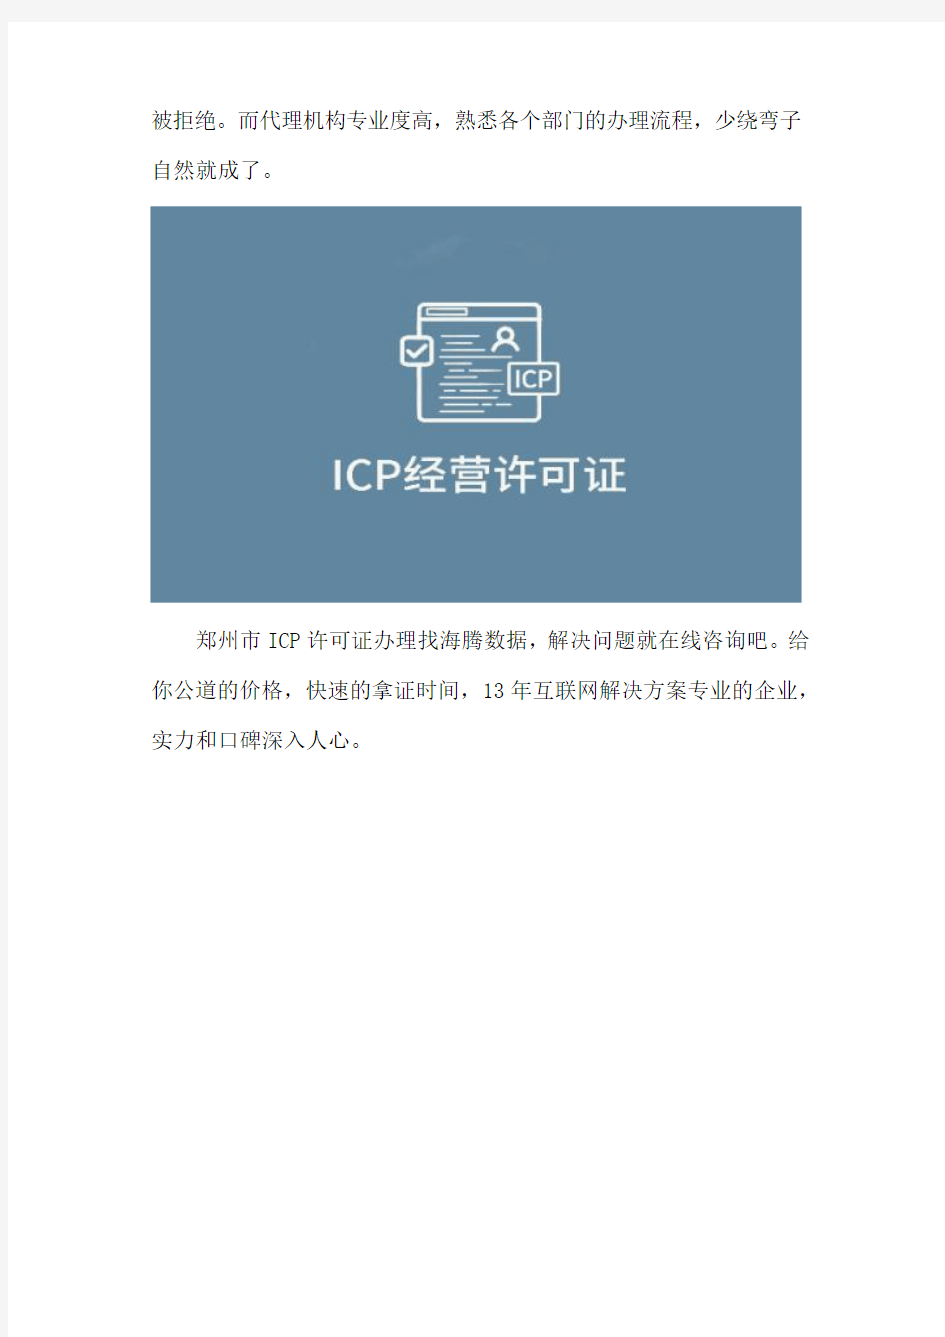 快速办理ICP许可证